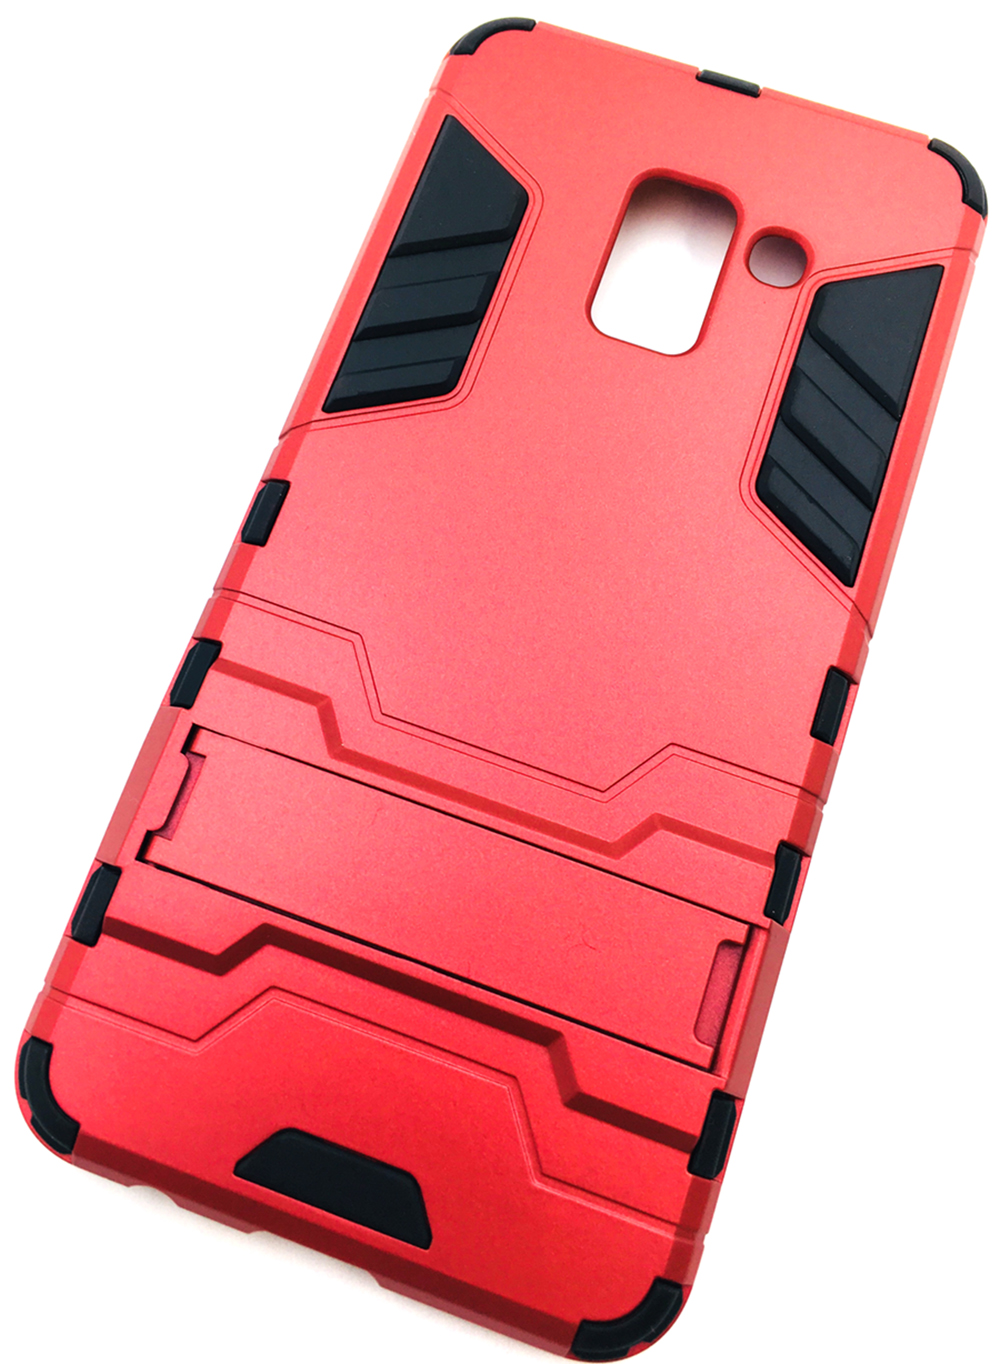 Чехол для сотового телефона Мобильная мода Samsung A8 2018 Накладка противоударная с подставкой, трансформер, 7173R, красный